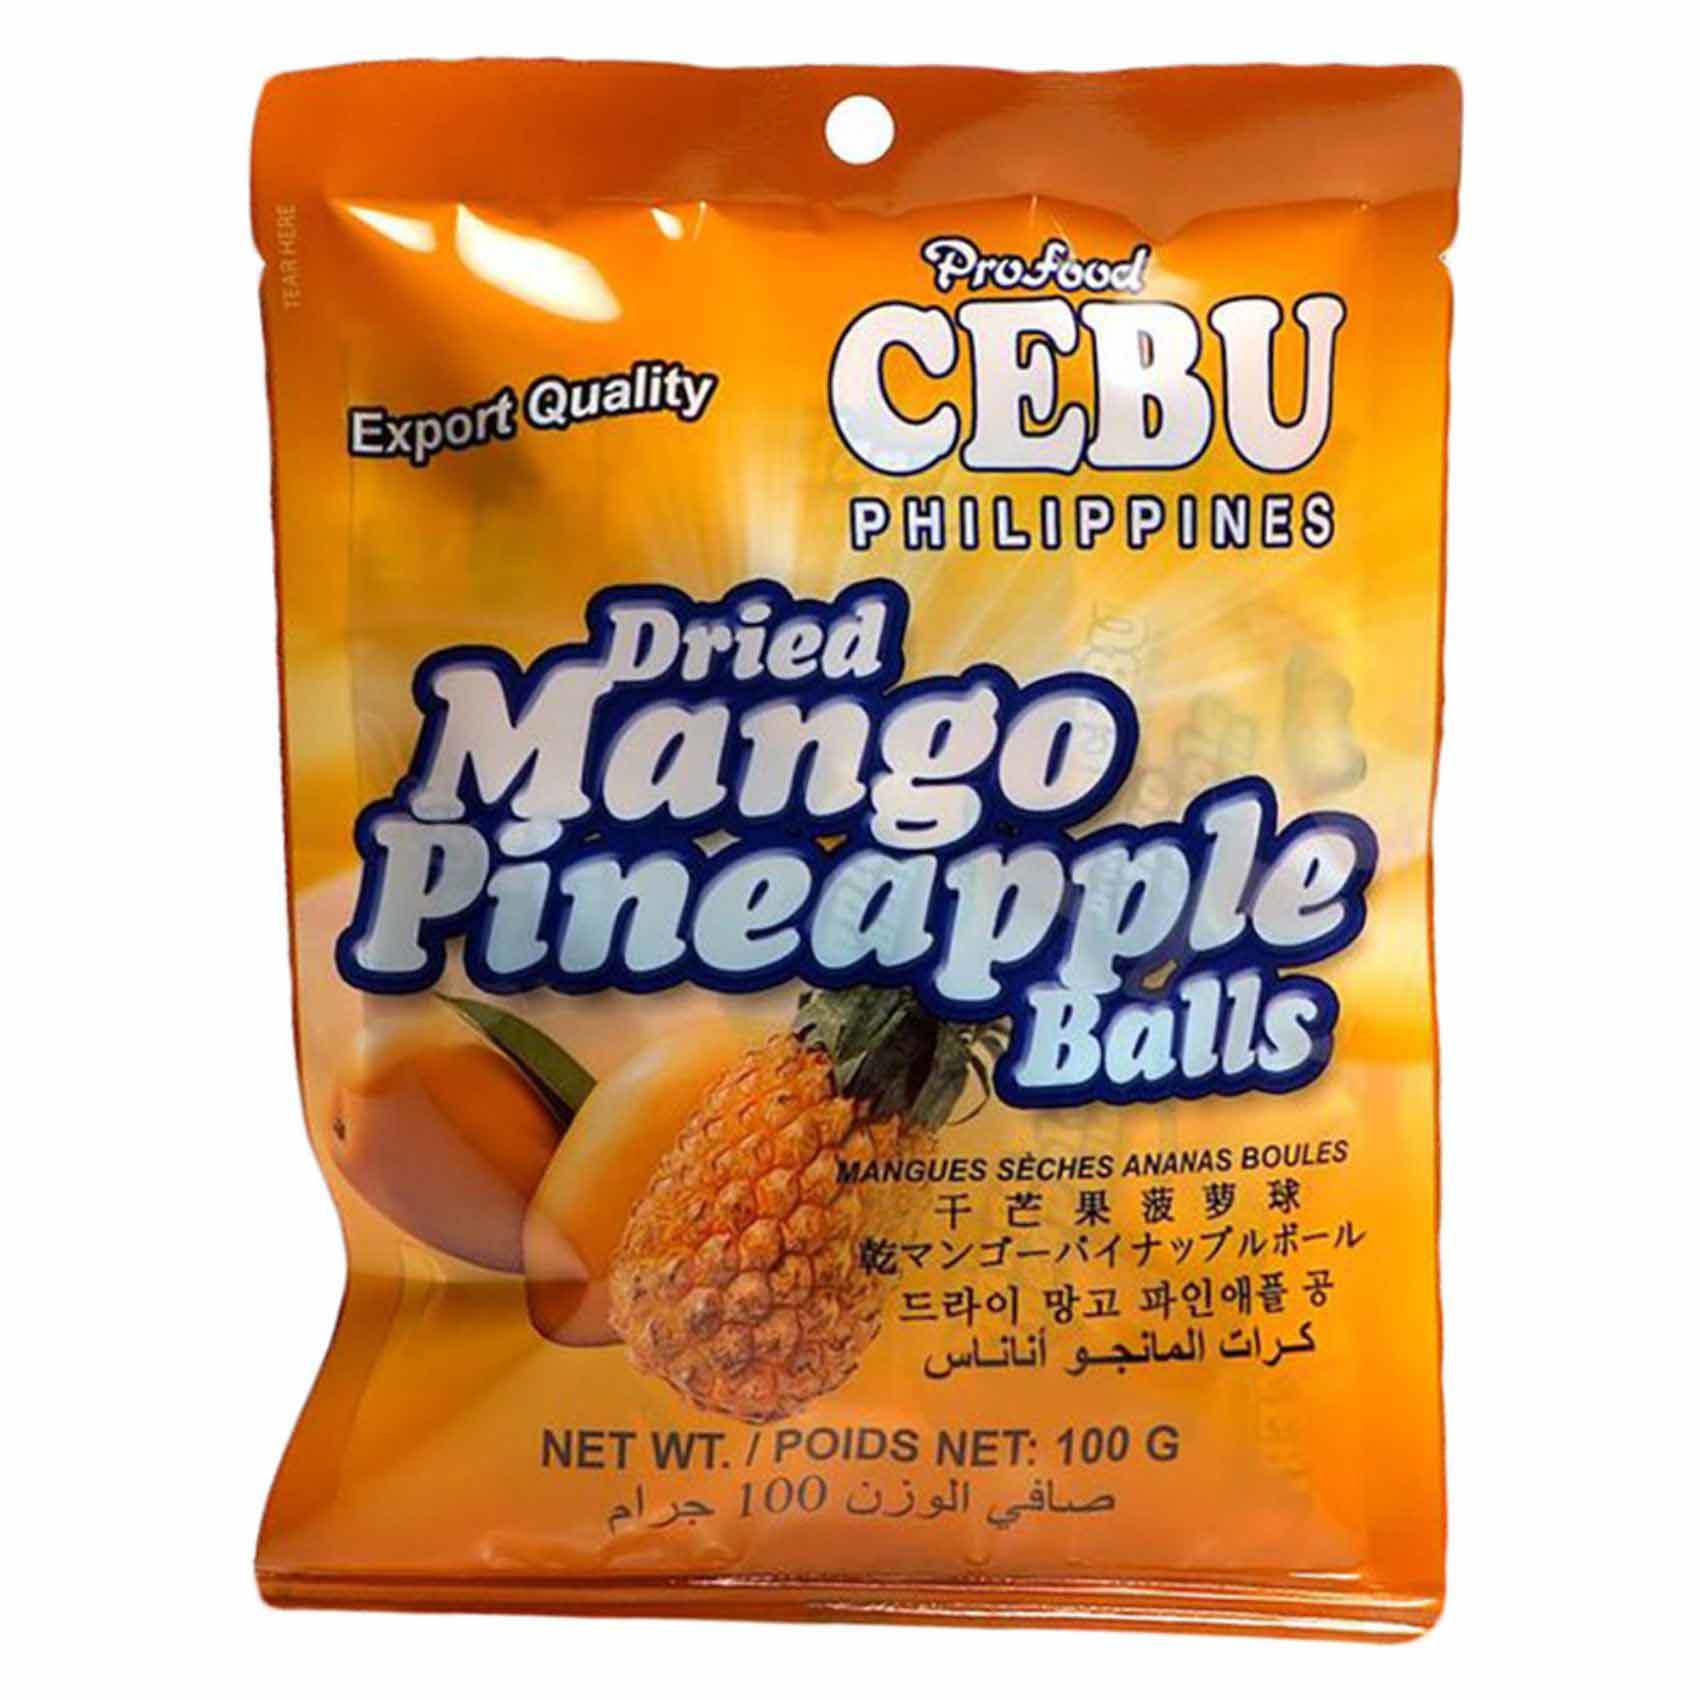 Buy Cebu Dried Mango Tamarind Balls 100g Online Shop Food Cupboard On Carrefour Uae